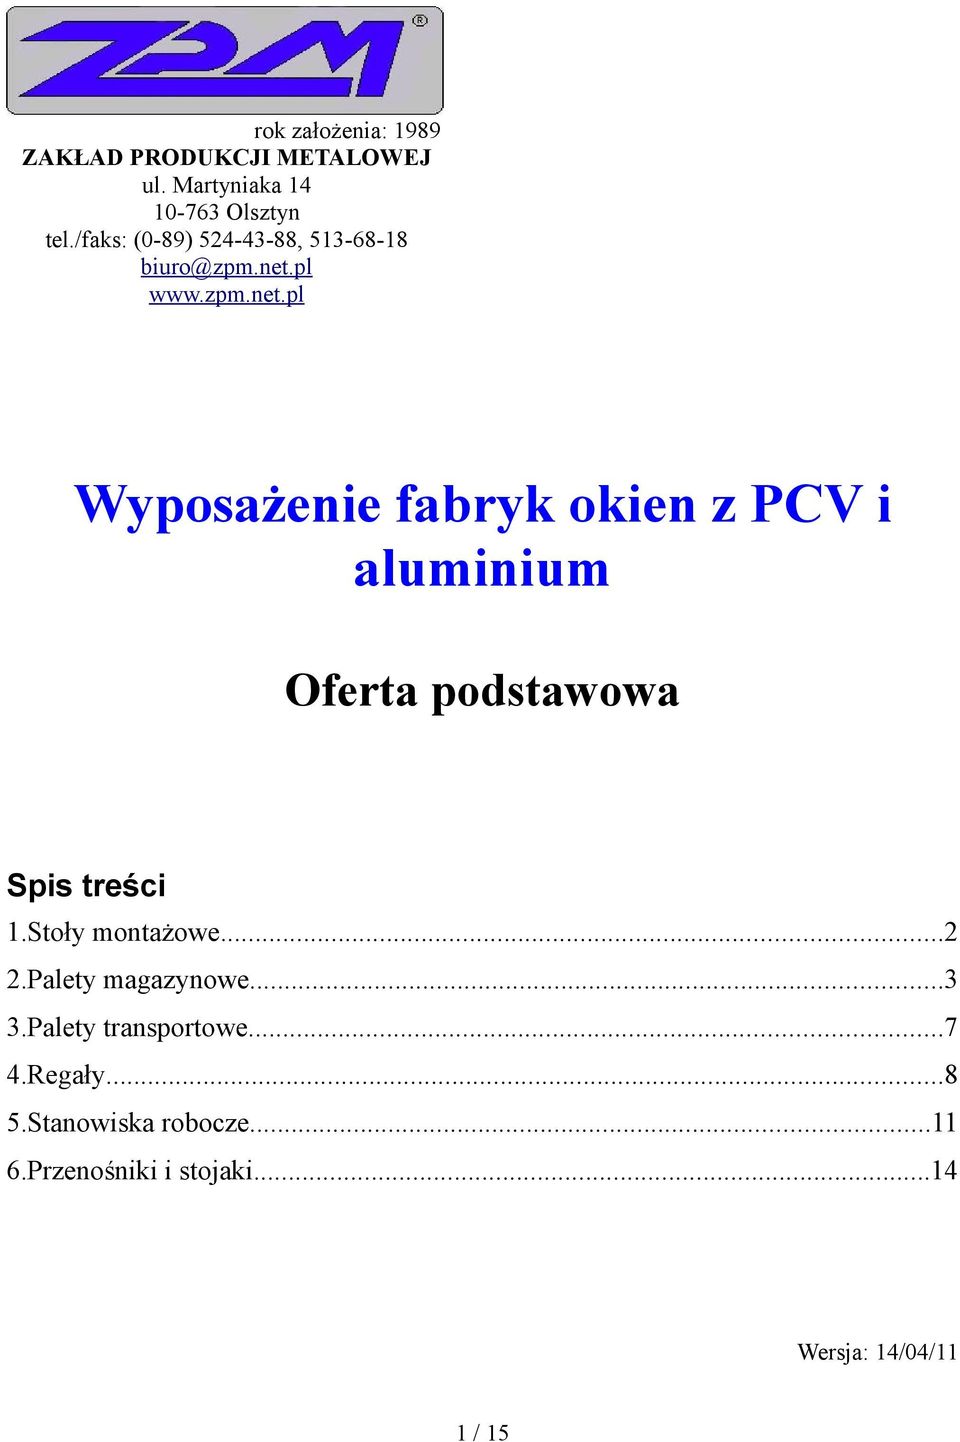 pl www.zpm.net.pl Wyposażenie fabryk okien z PCV i aluminium Oferta podstawowa Spis treści 1.